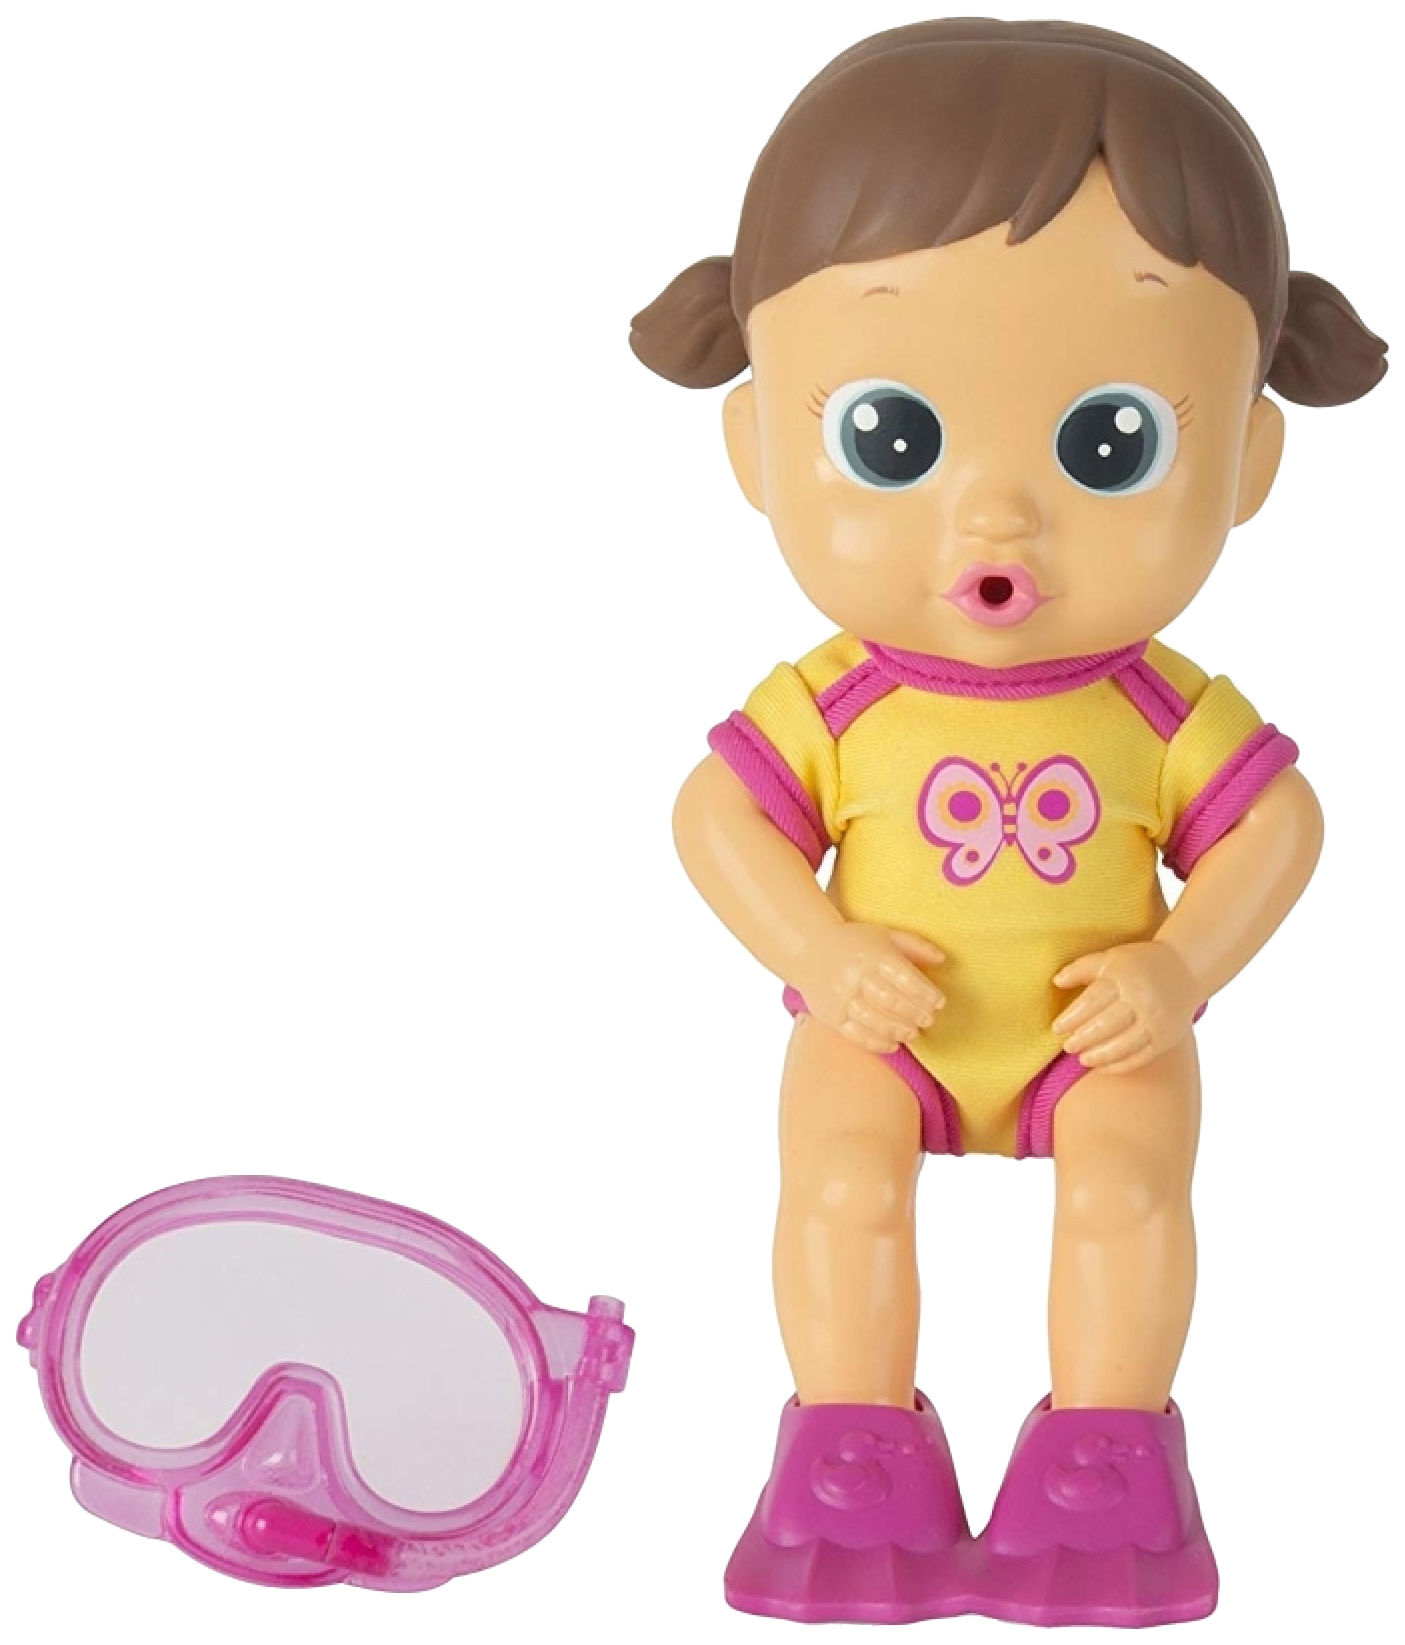 Кукла для купания Bloopies - Лавли, в открытой коробке, 24 см IMC toys кукла для купания bloopies флоуи в открытой коробке 24 см imc toys